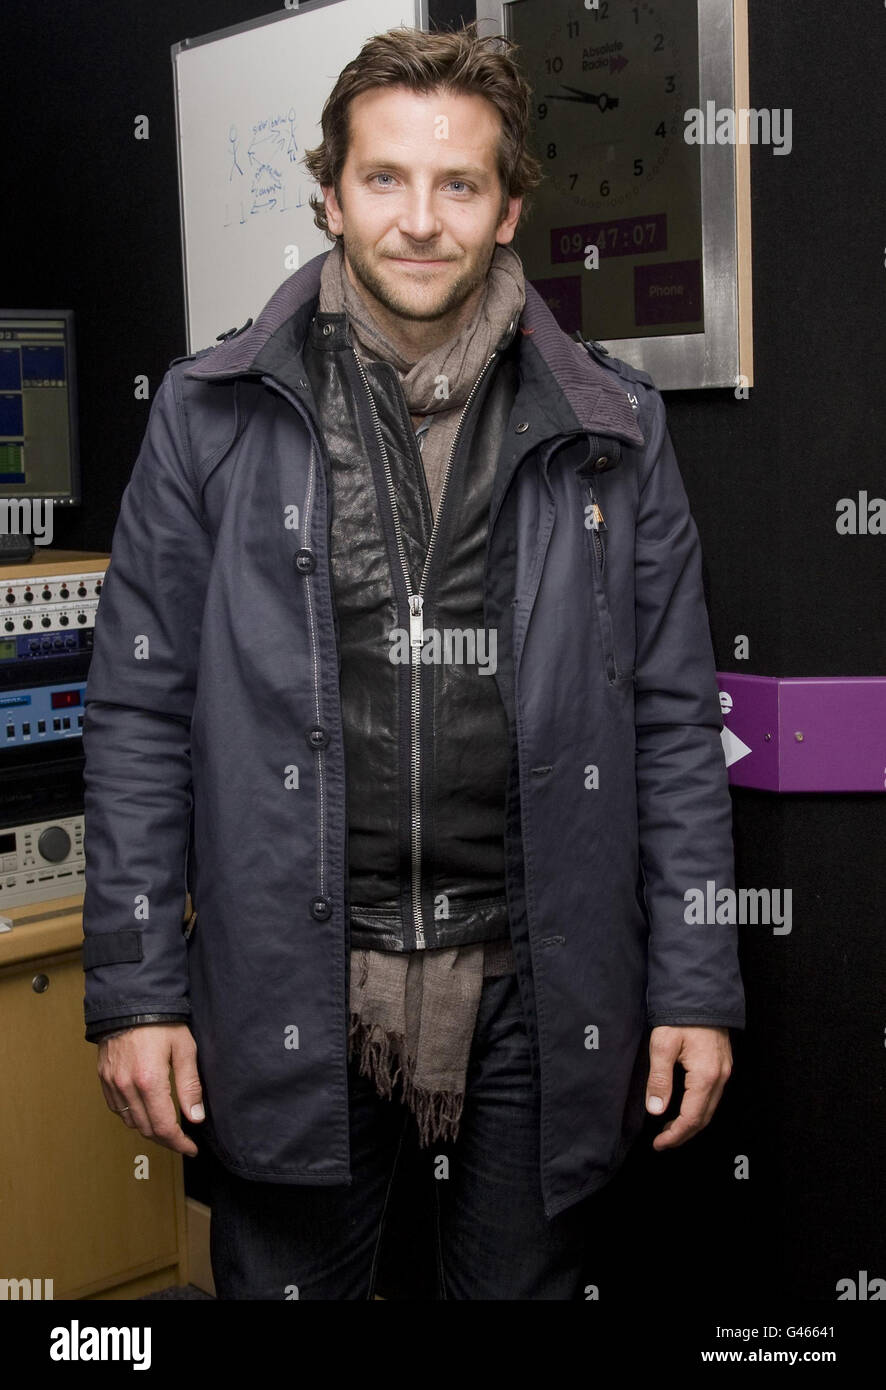 Bradley Cooper presso Absolute radio. Bradley Cooper visita Absolute radio nel centro di Londra. Foto Stock